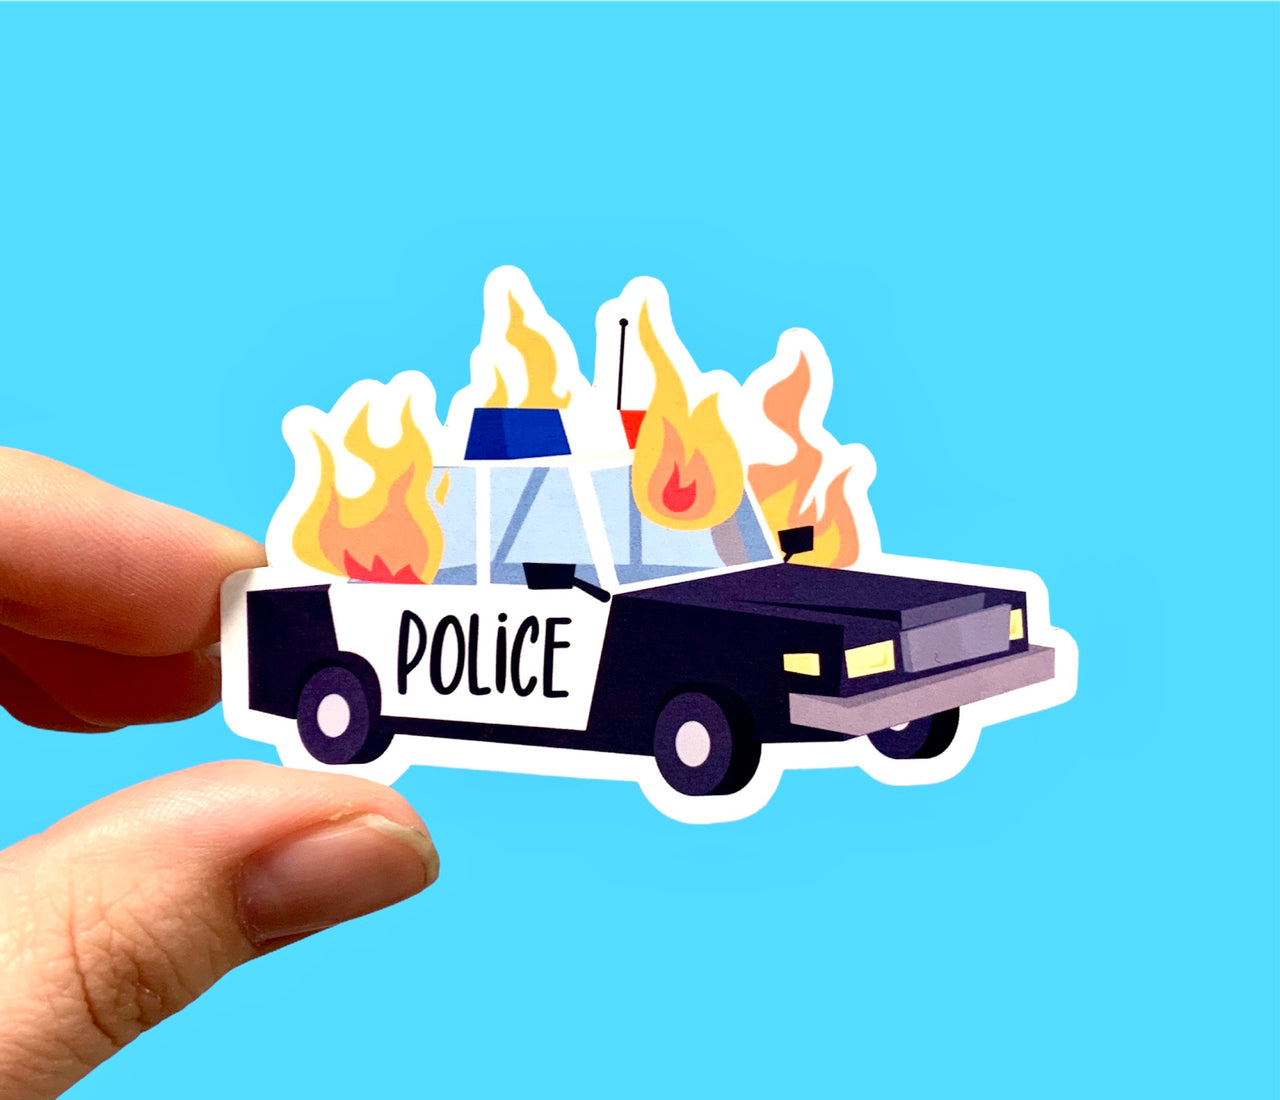 Burning police car